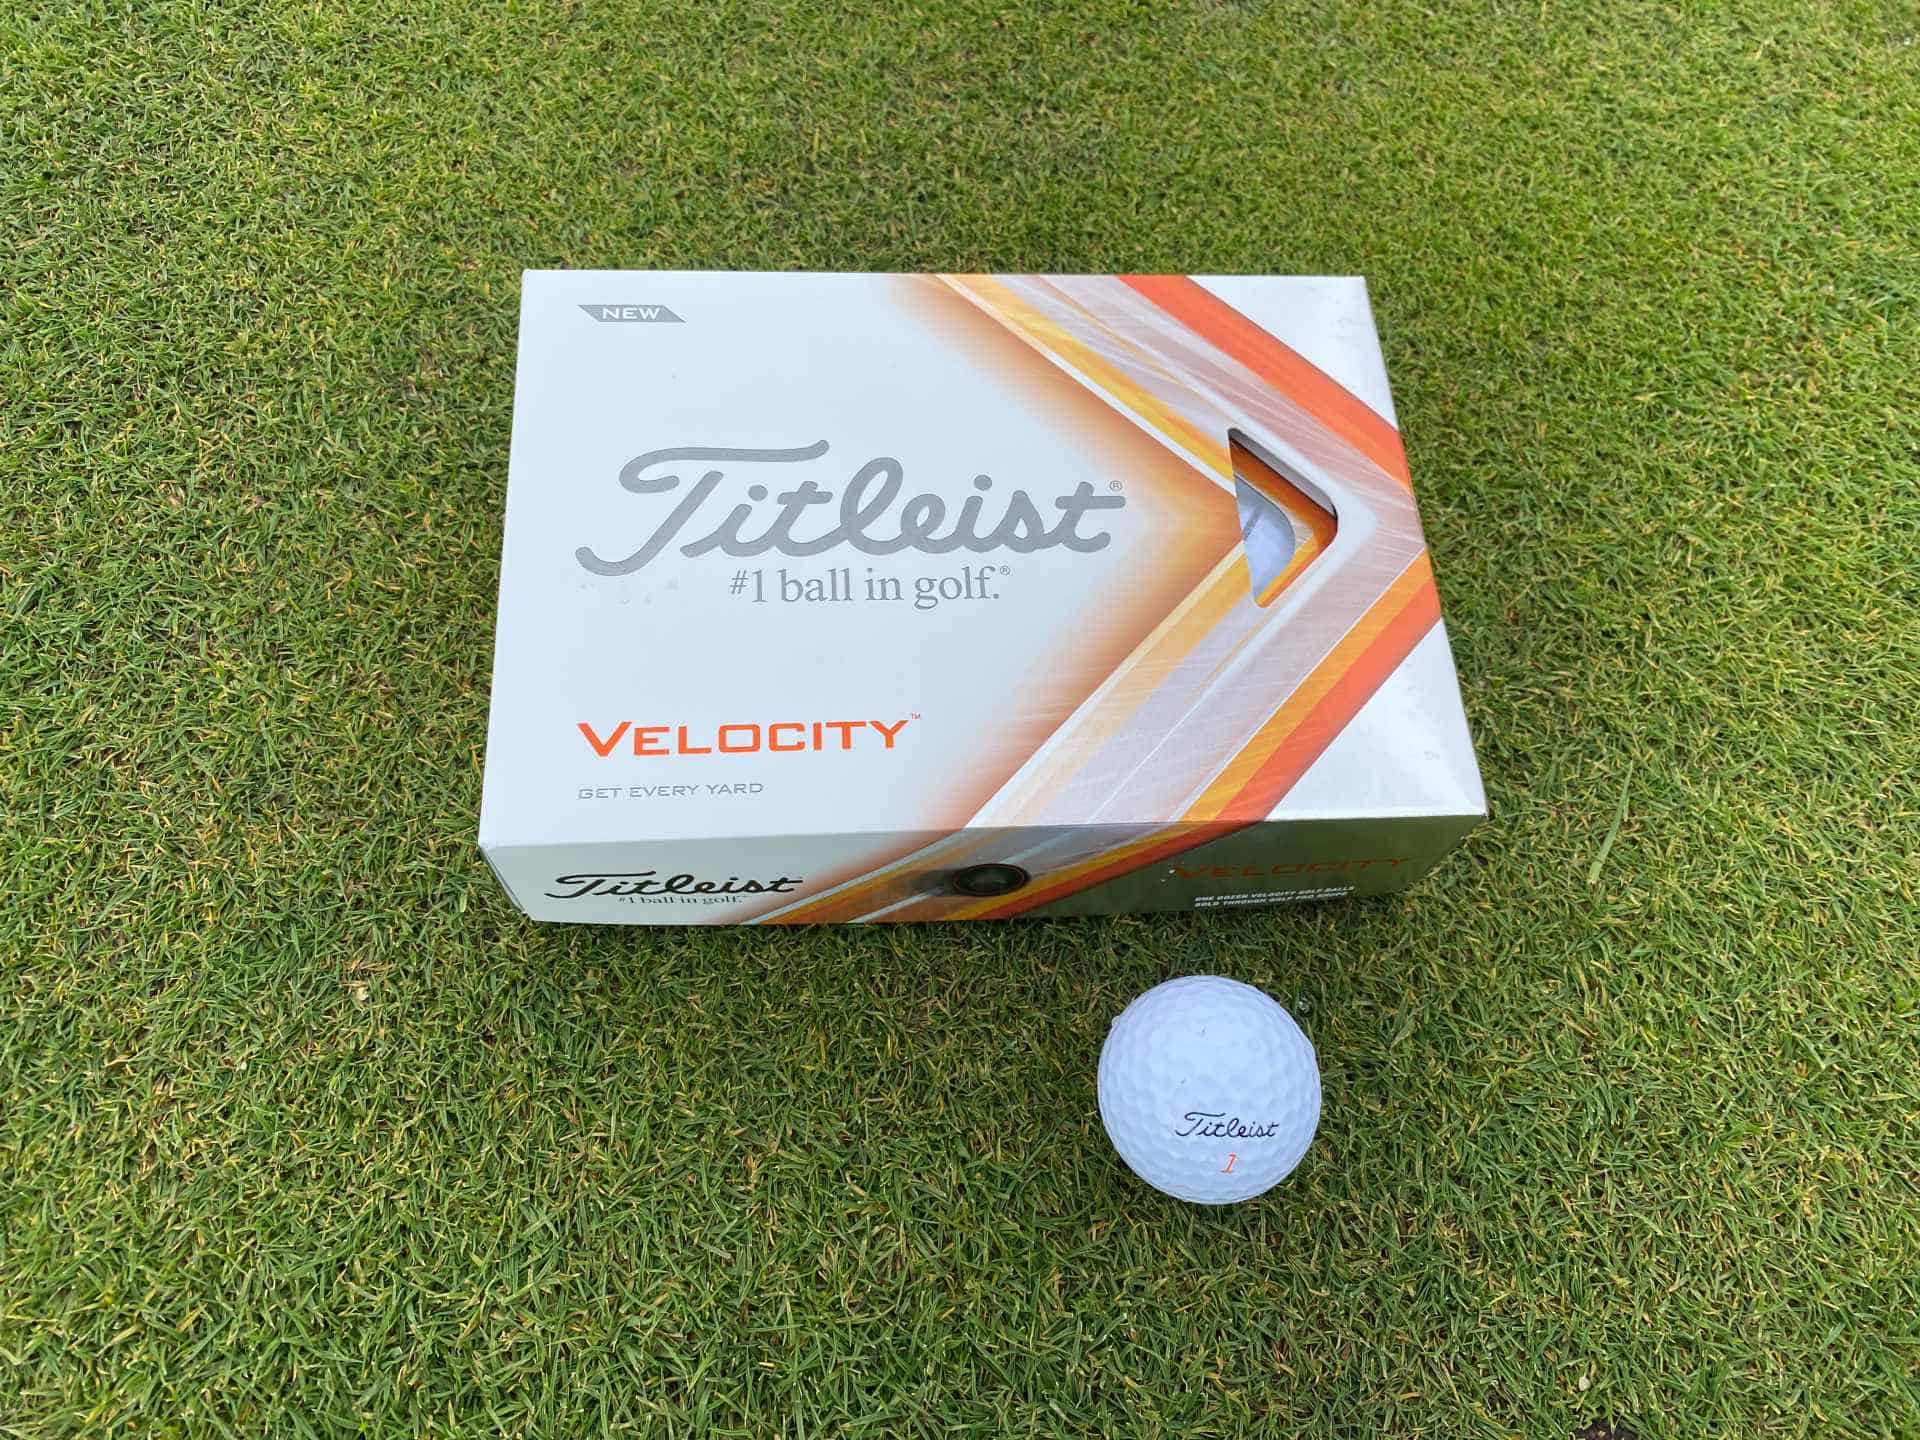 Titleist Velocity golf ball review